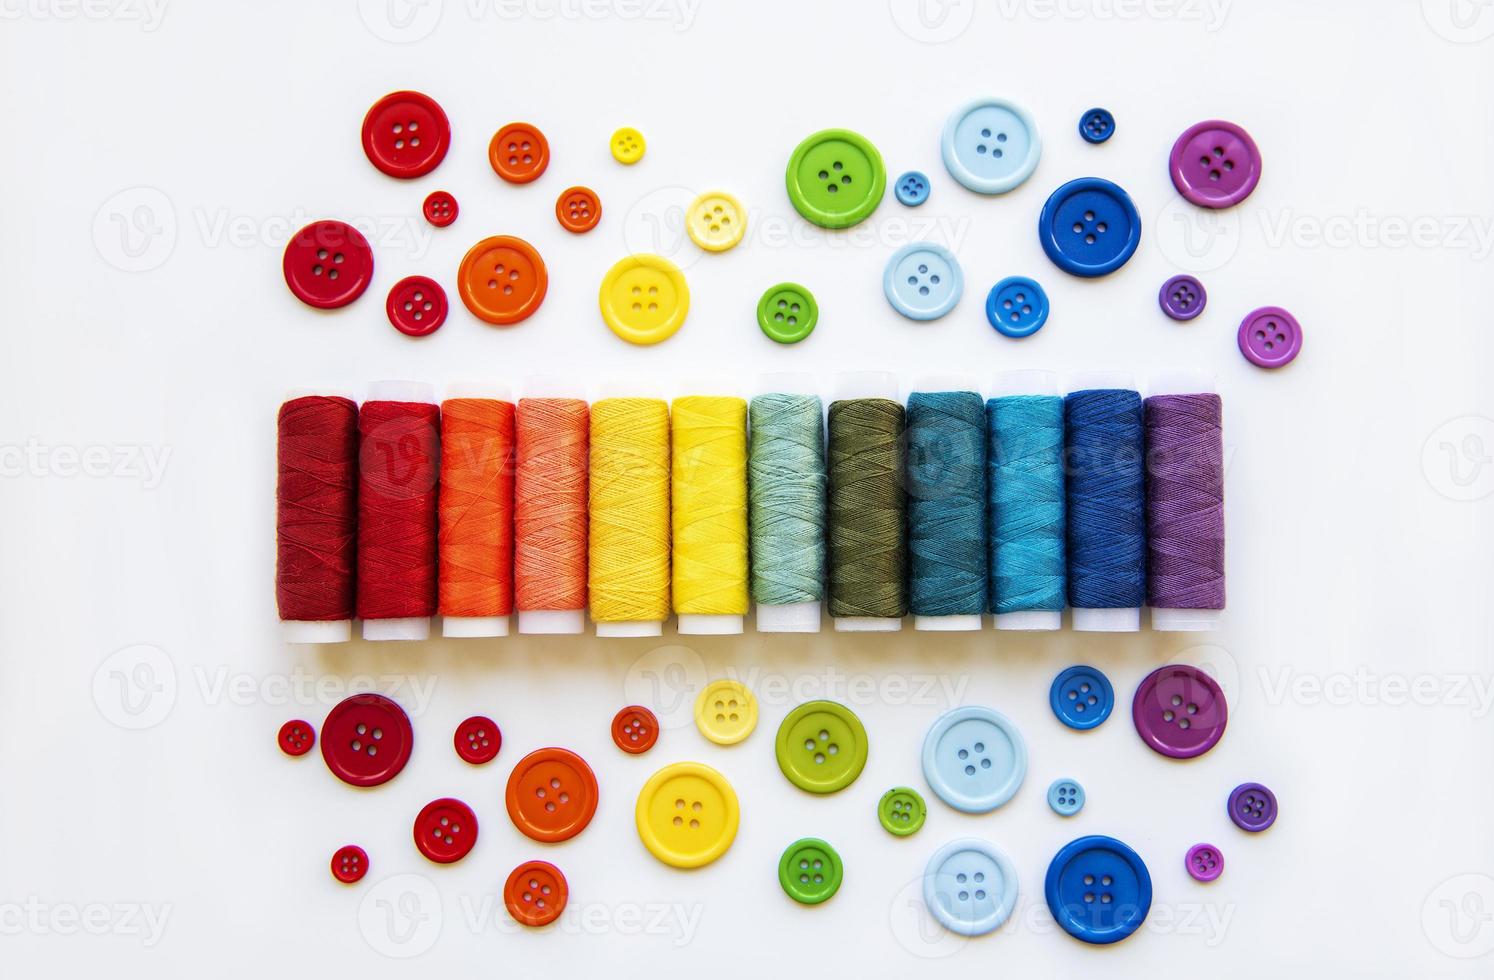 carretéis de linha e botões nas cores do arco-íris foto